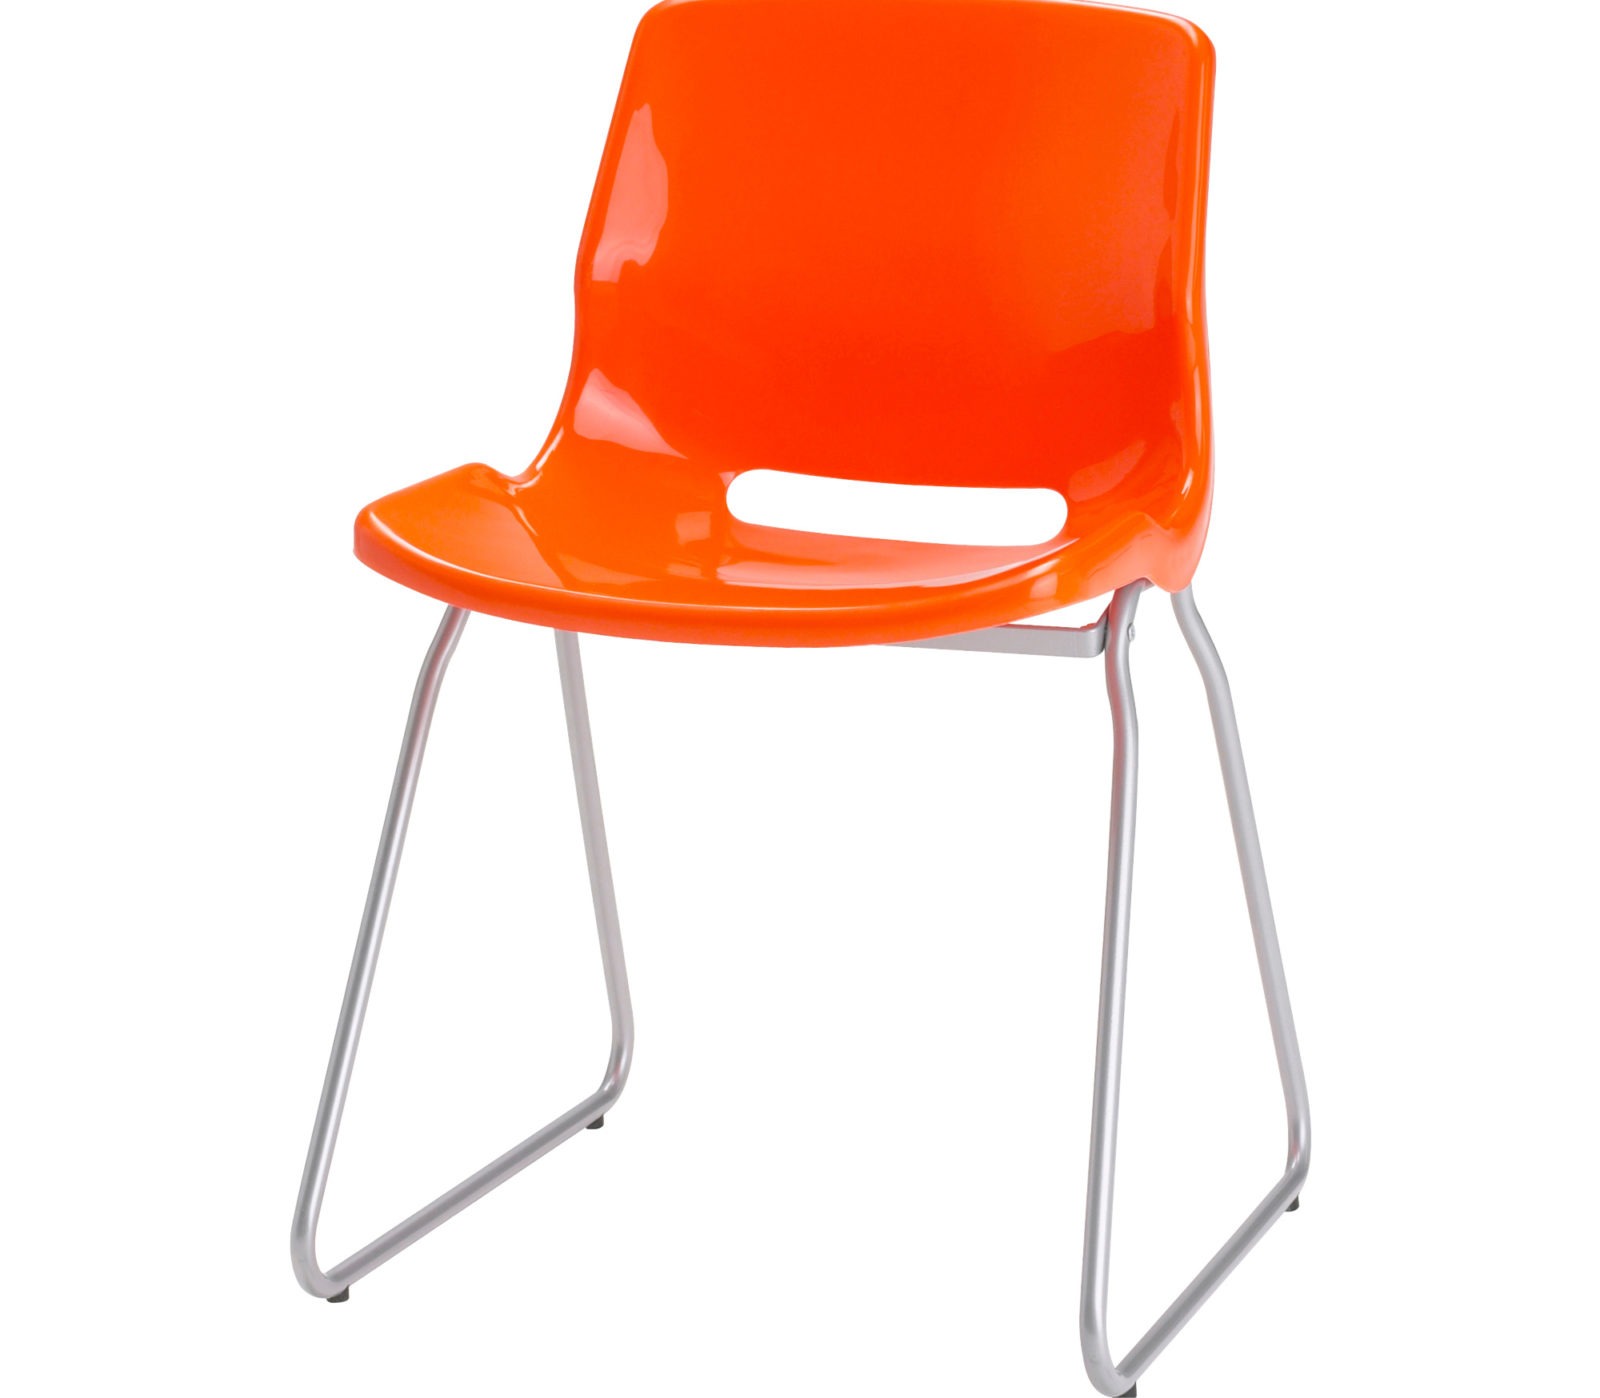 Stapelbar enkel stol med metallunderrede och orange plastsits, SNILLE.